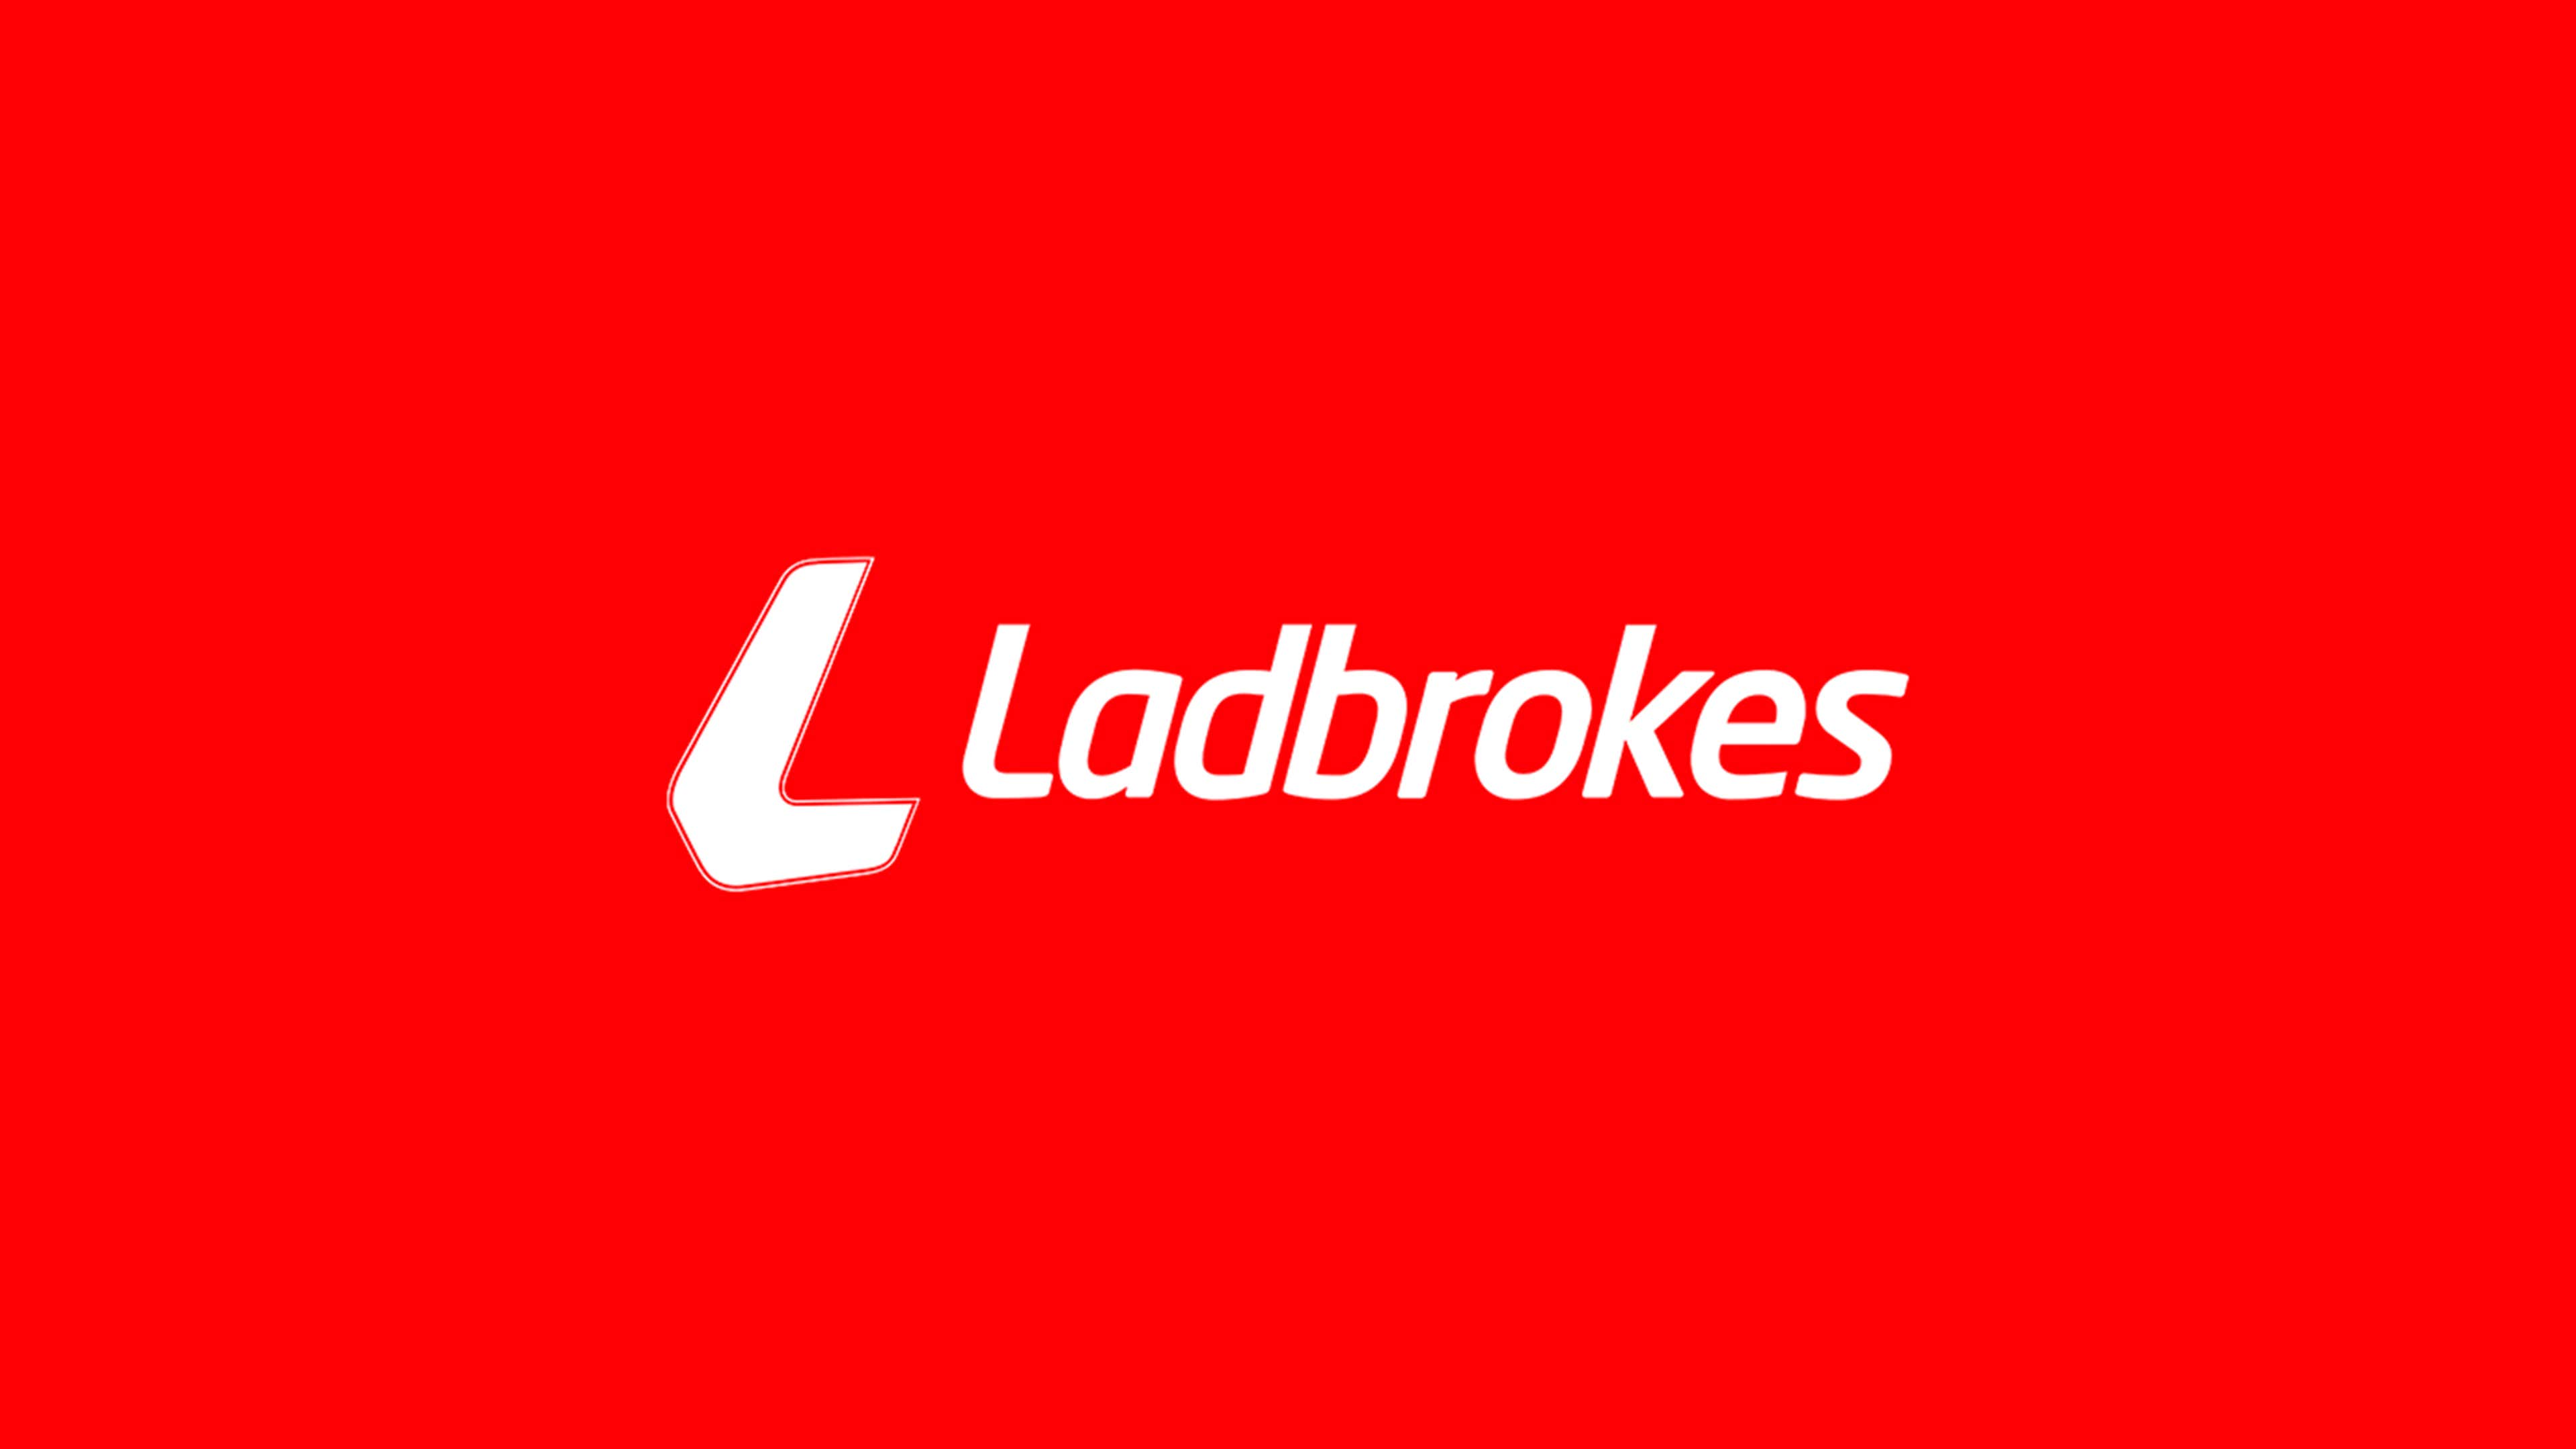 Ladbrokes sign up offer